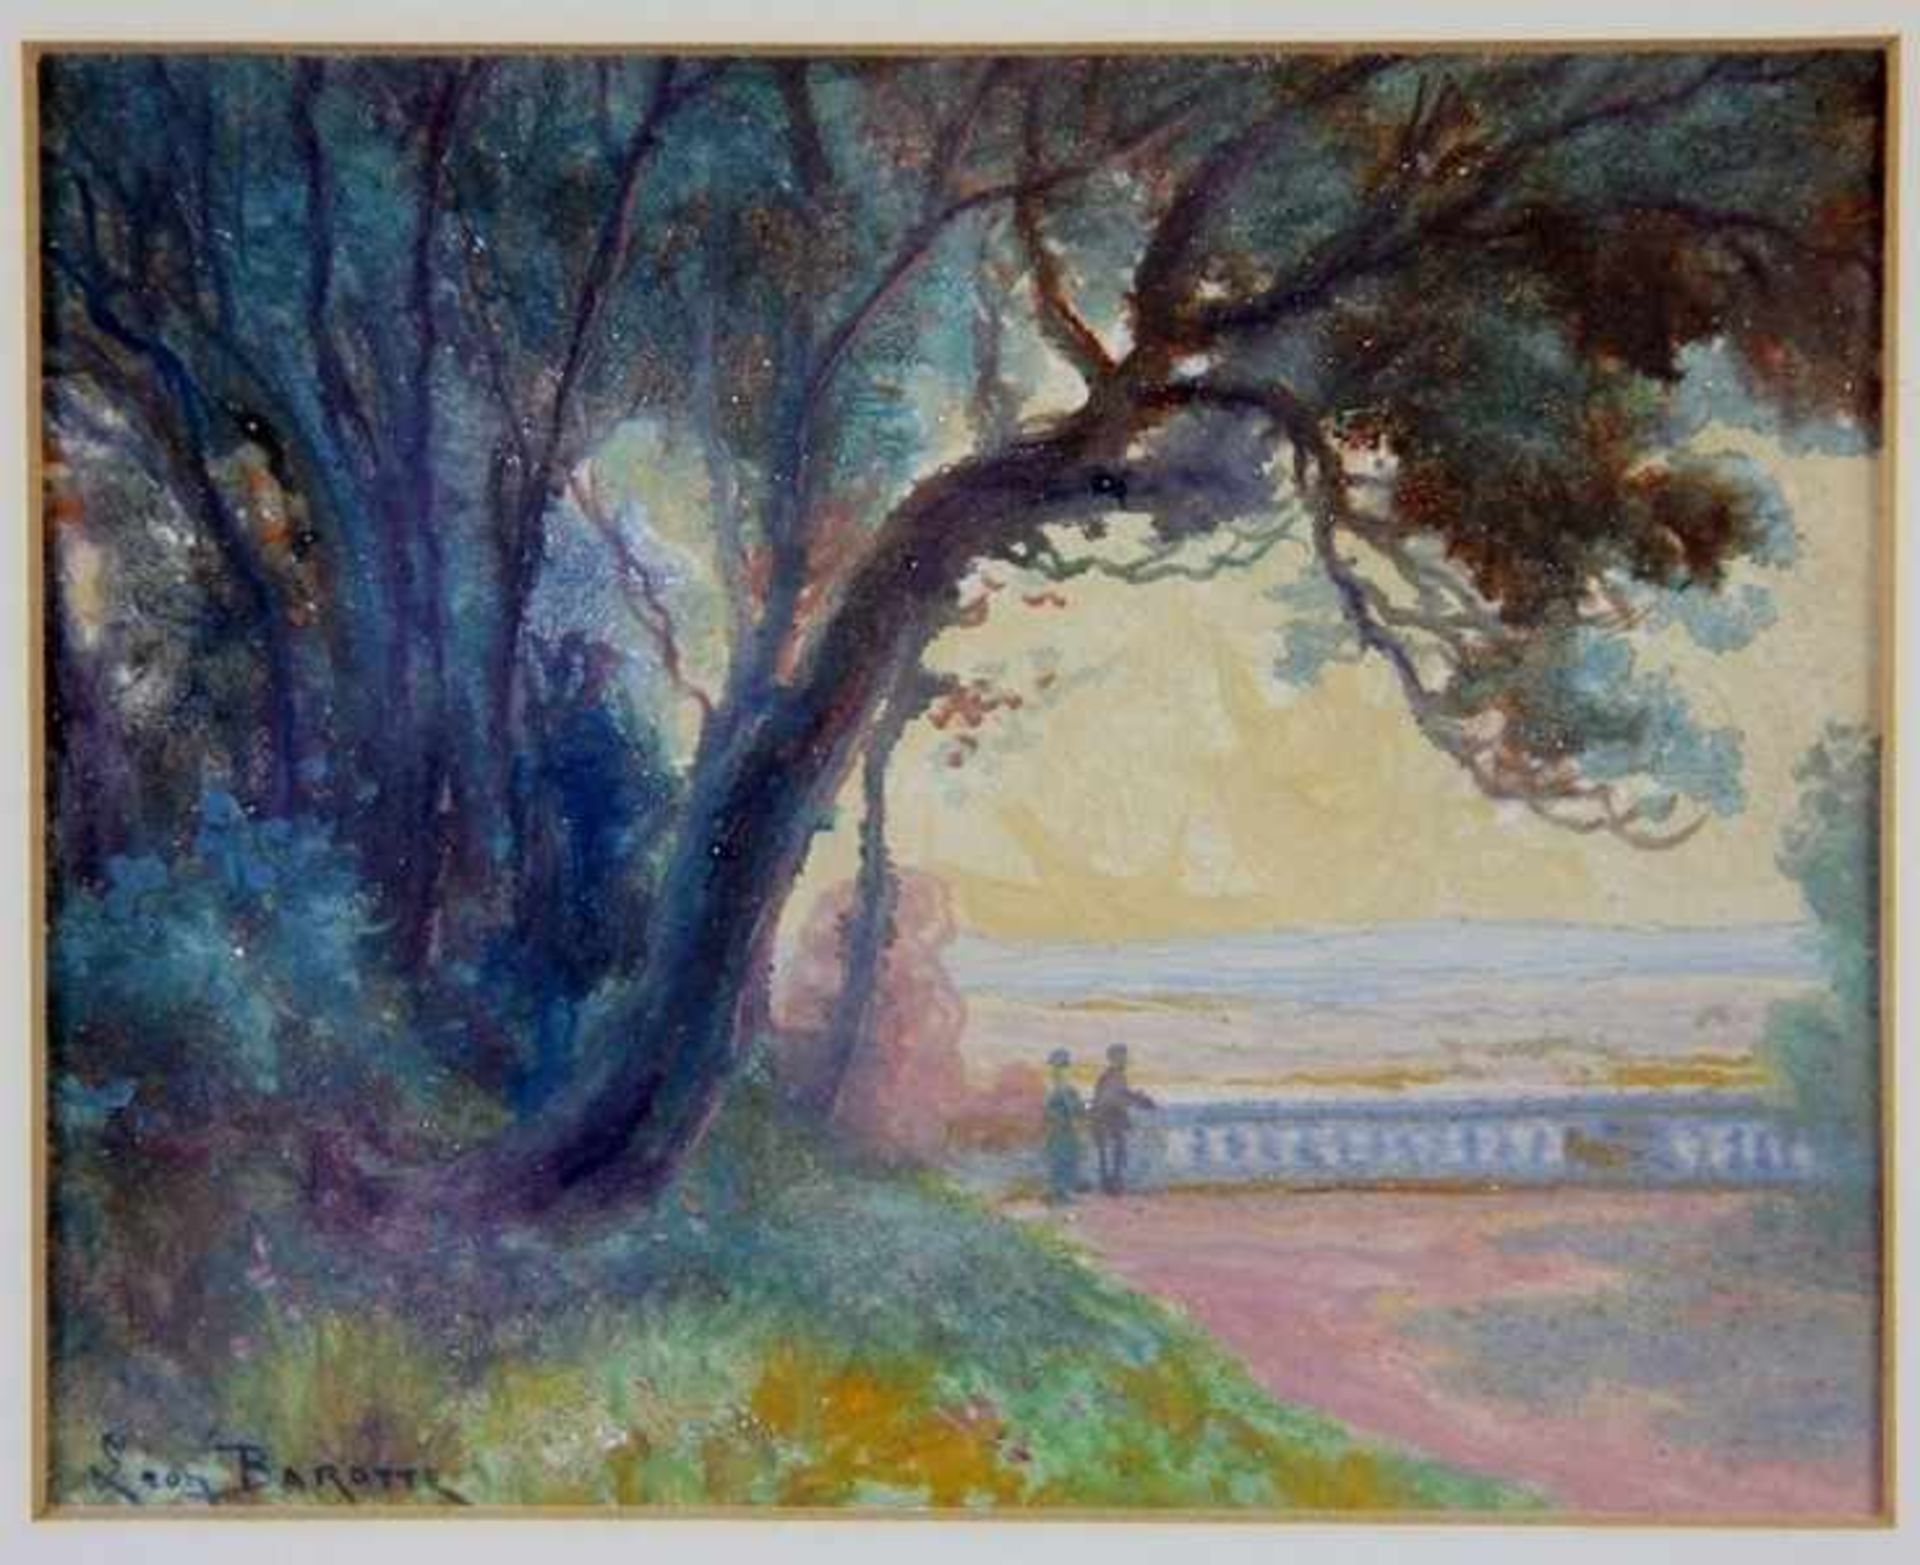 Barotte, Leon1866-1933, Aquarell/Mischtechnik, abendliche Parklandschaft mit markanten Bäumen, im